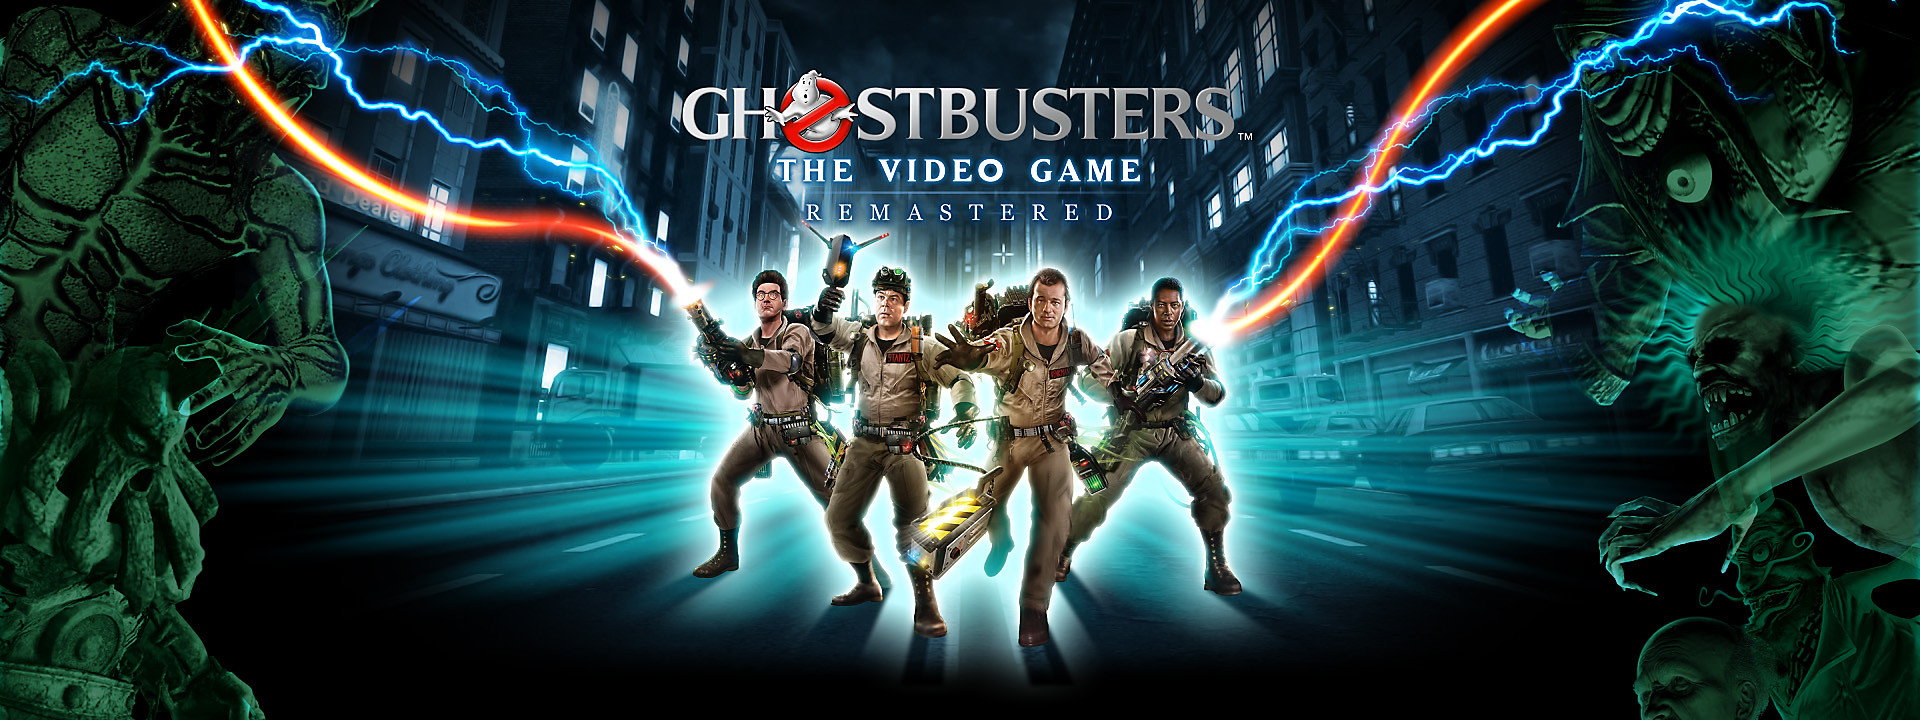 Resultado de imagen de Ghostbusters: The Video Game Remastered"